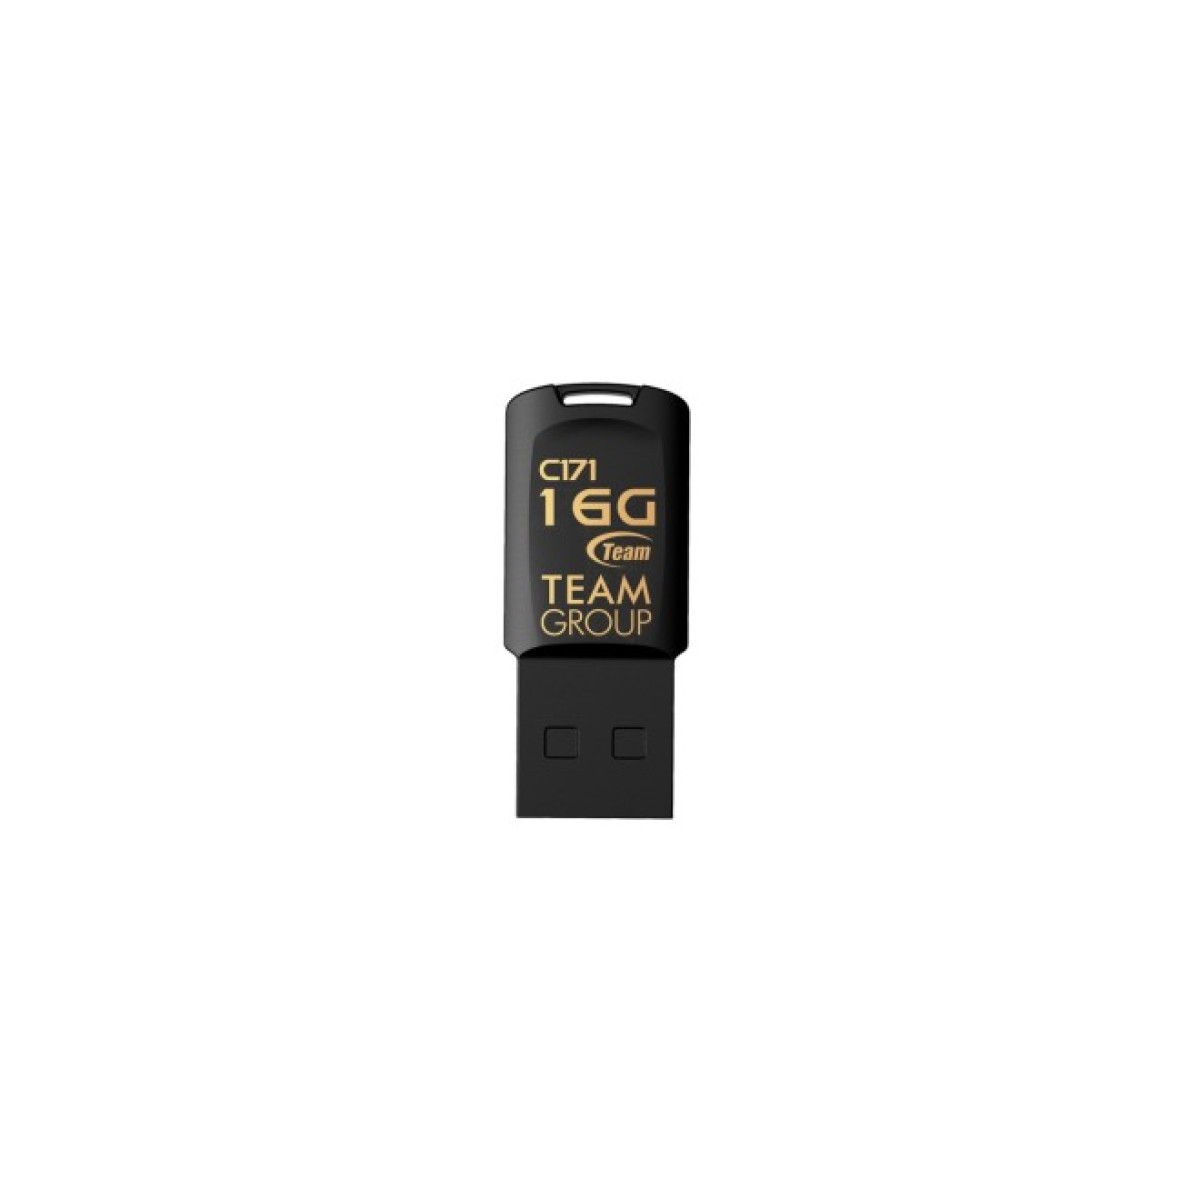 USB флеш накопичувач Team 16GB C171 Black USB 2.0 (TC17116GB01) 256_256.jpg